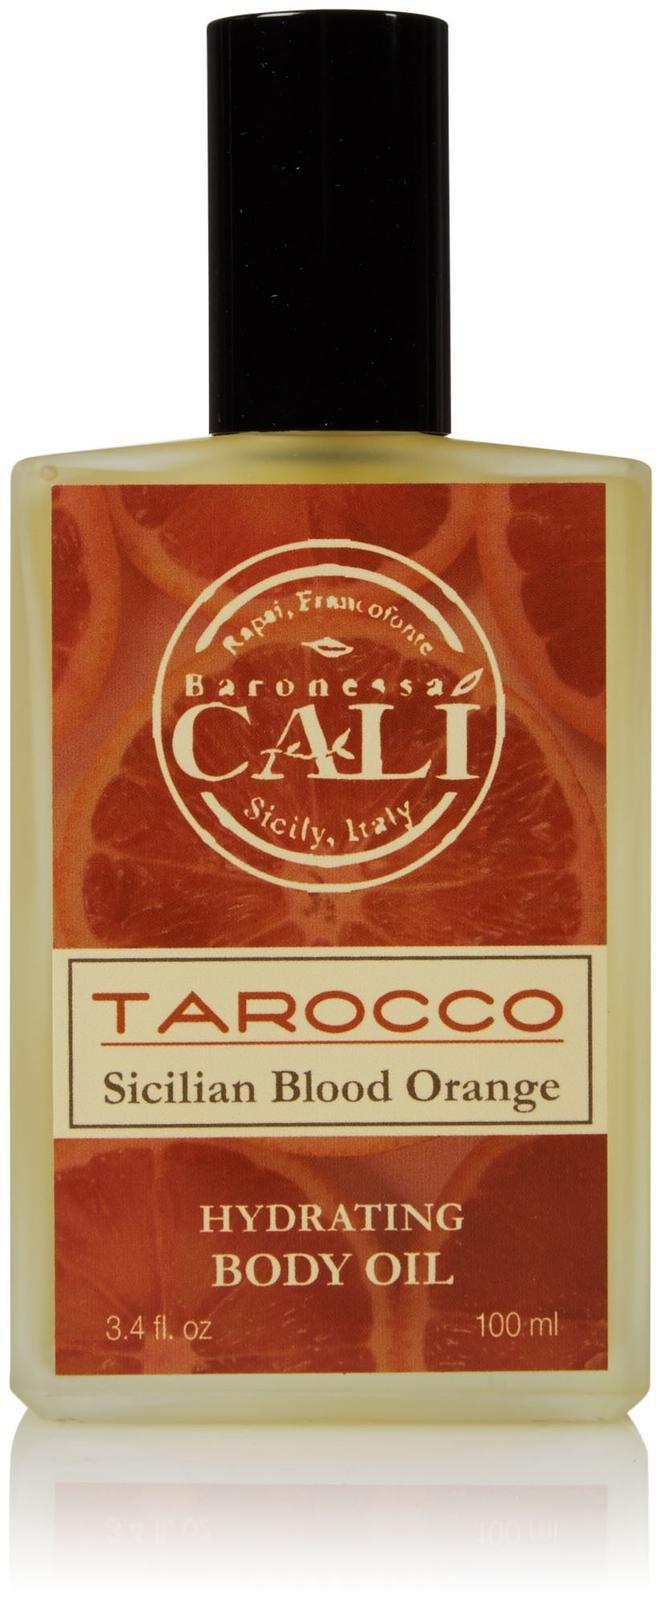 Baronessa Cali Tarocco Hydrating Body Oil - 3.4 Oz